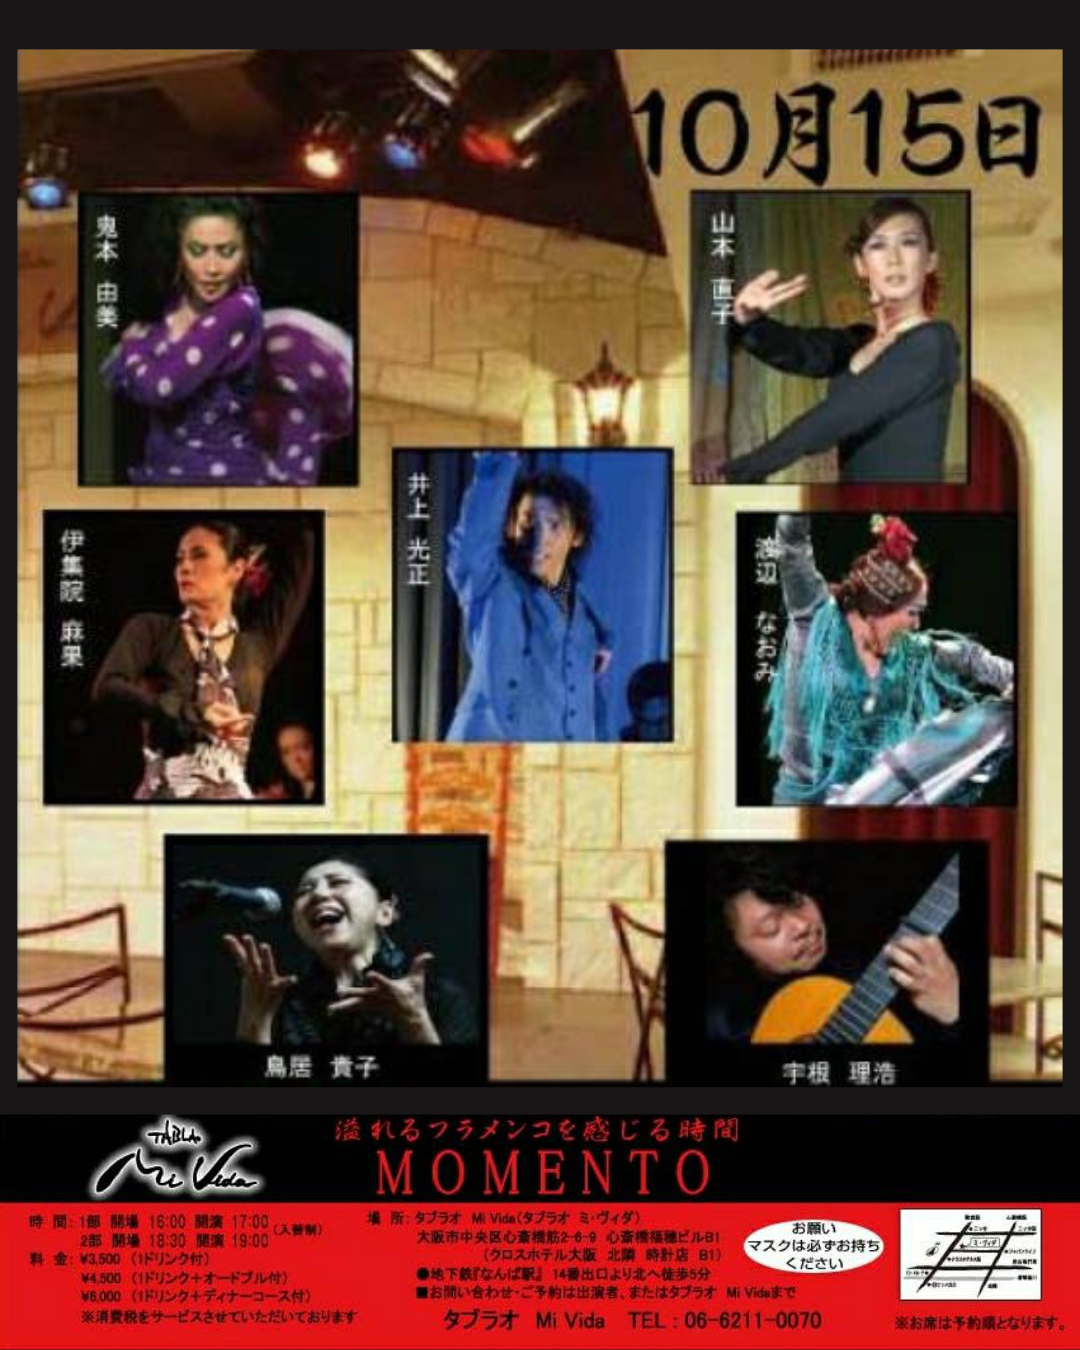 【出演】2023年10月15日(日)「MOMENTO en Tablao Mi Vida」に出演します。